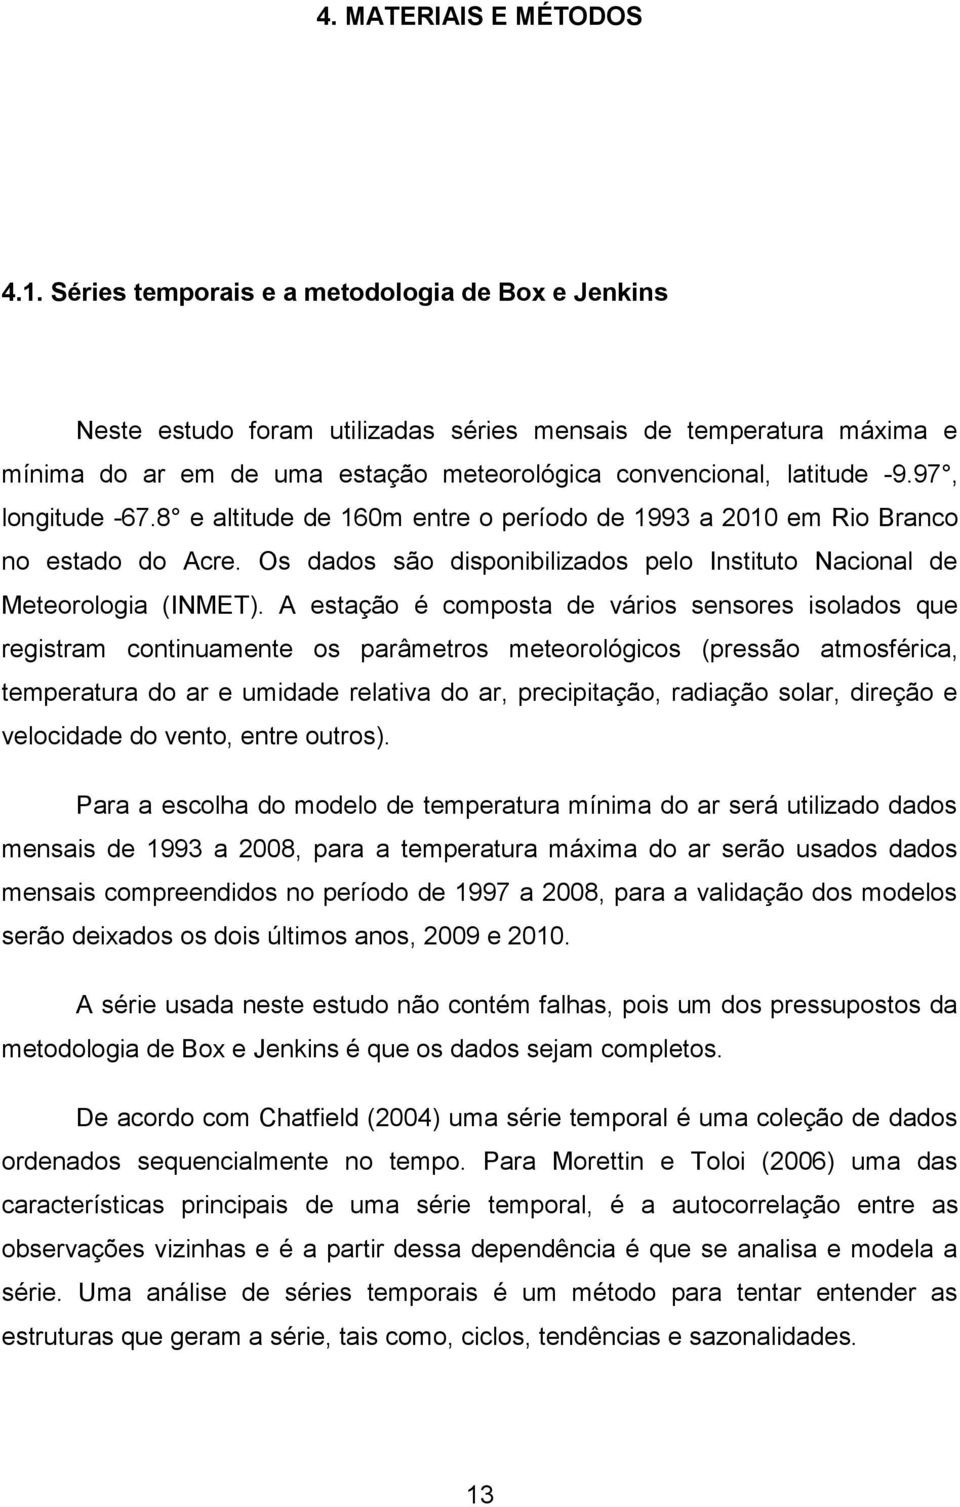 97, longitude -67.8 e altitude de 160m entre o período de 1993 a 2010 em Rio Branco no estado do Acre. Os dados são disponibilizados pelo Instituto Nacional de Meteorologia (INMET).